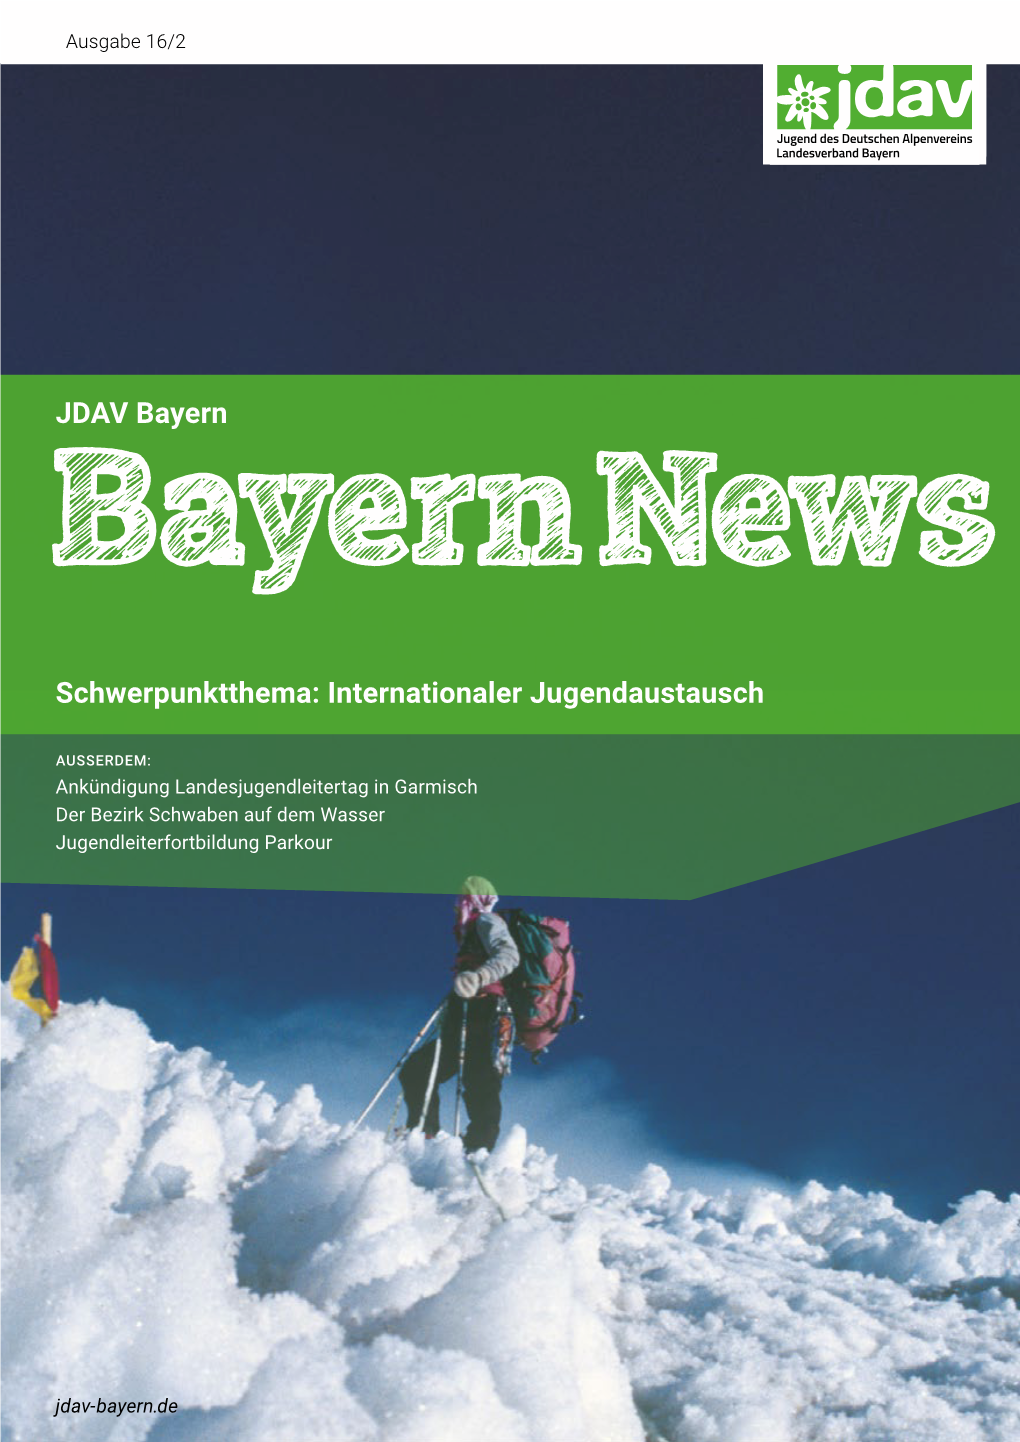 JDAV Bayern Schwerpunktthema: Internationaler Jugendaustausch